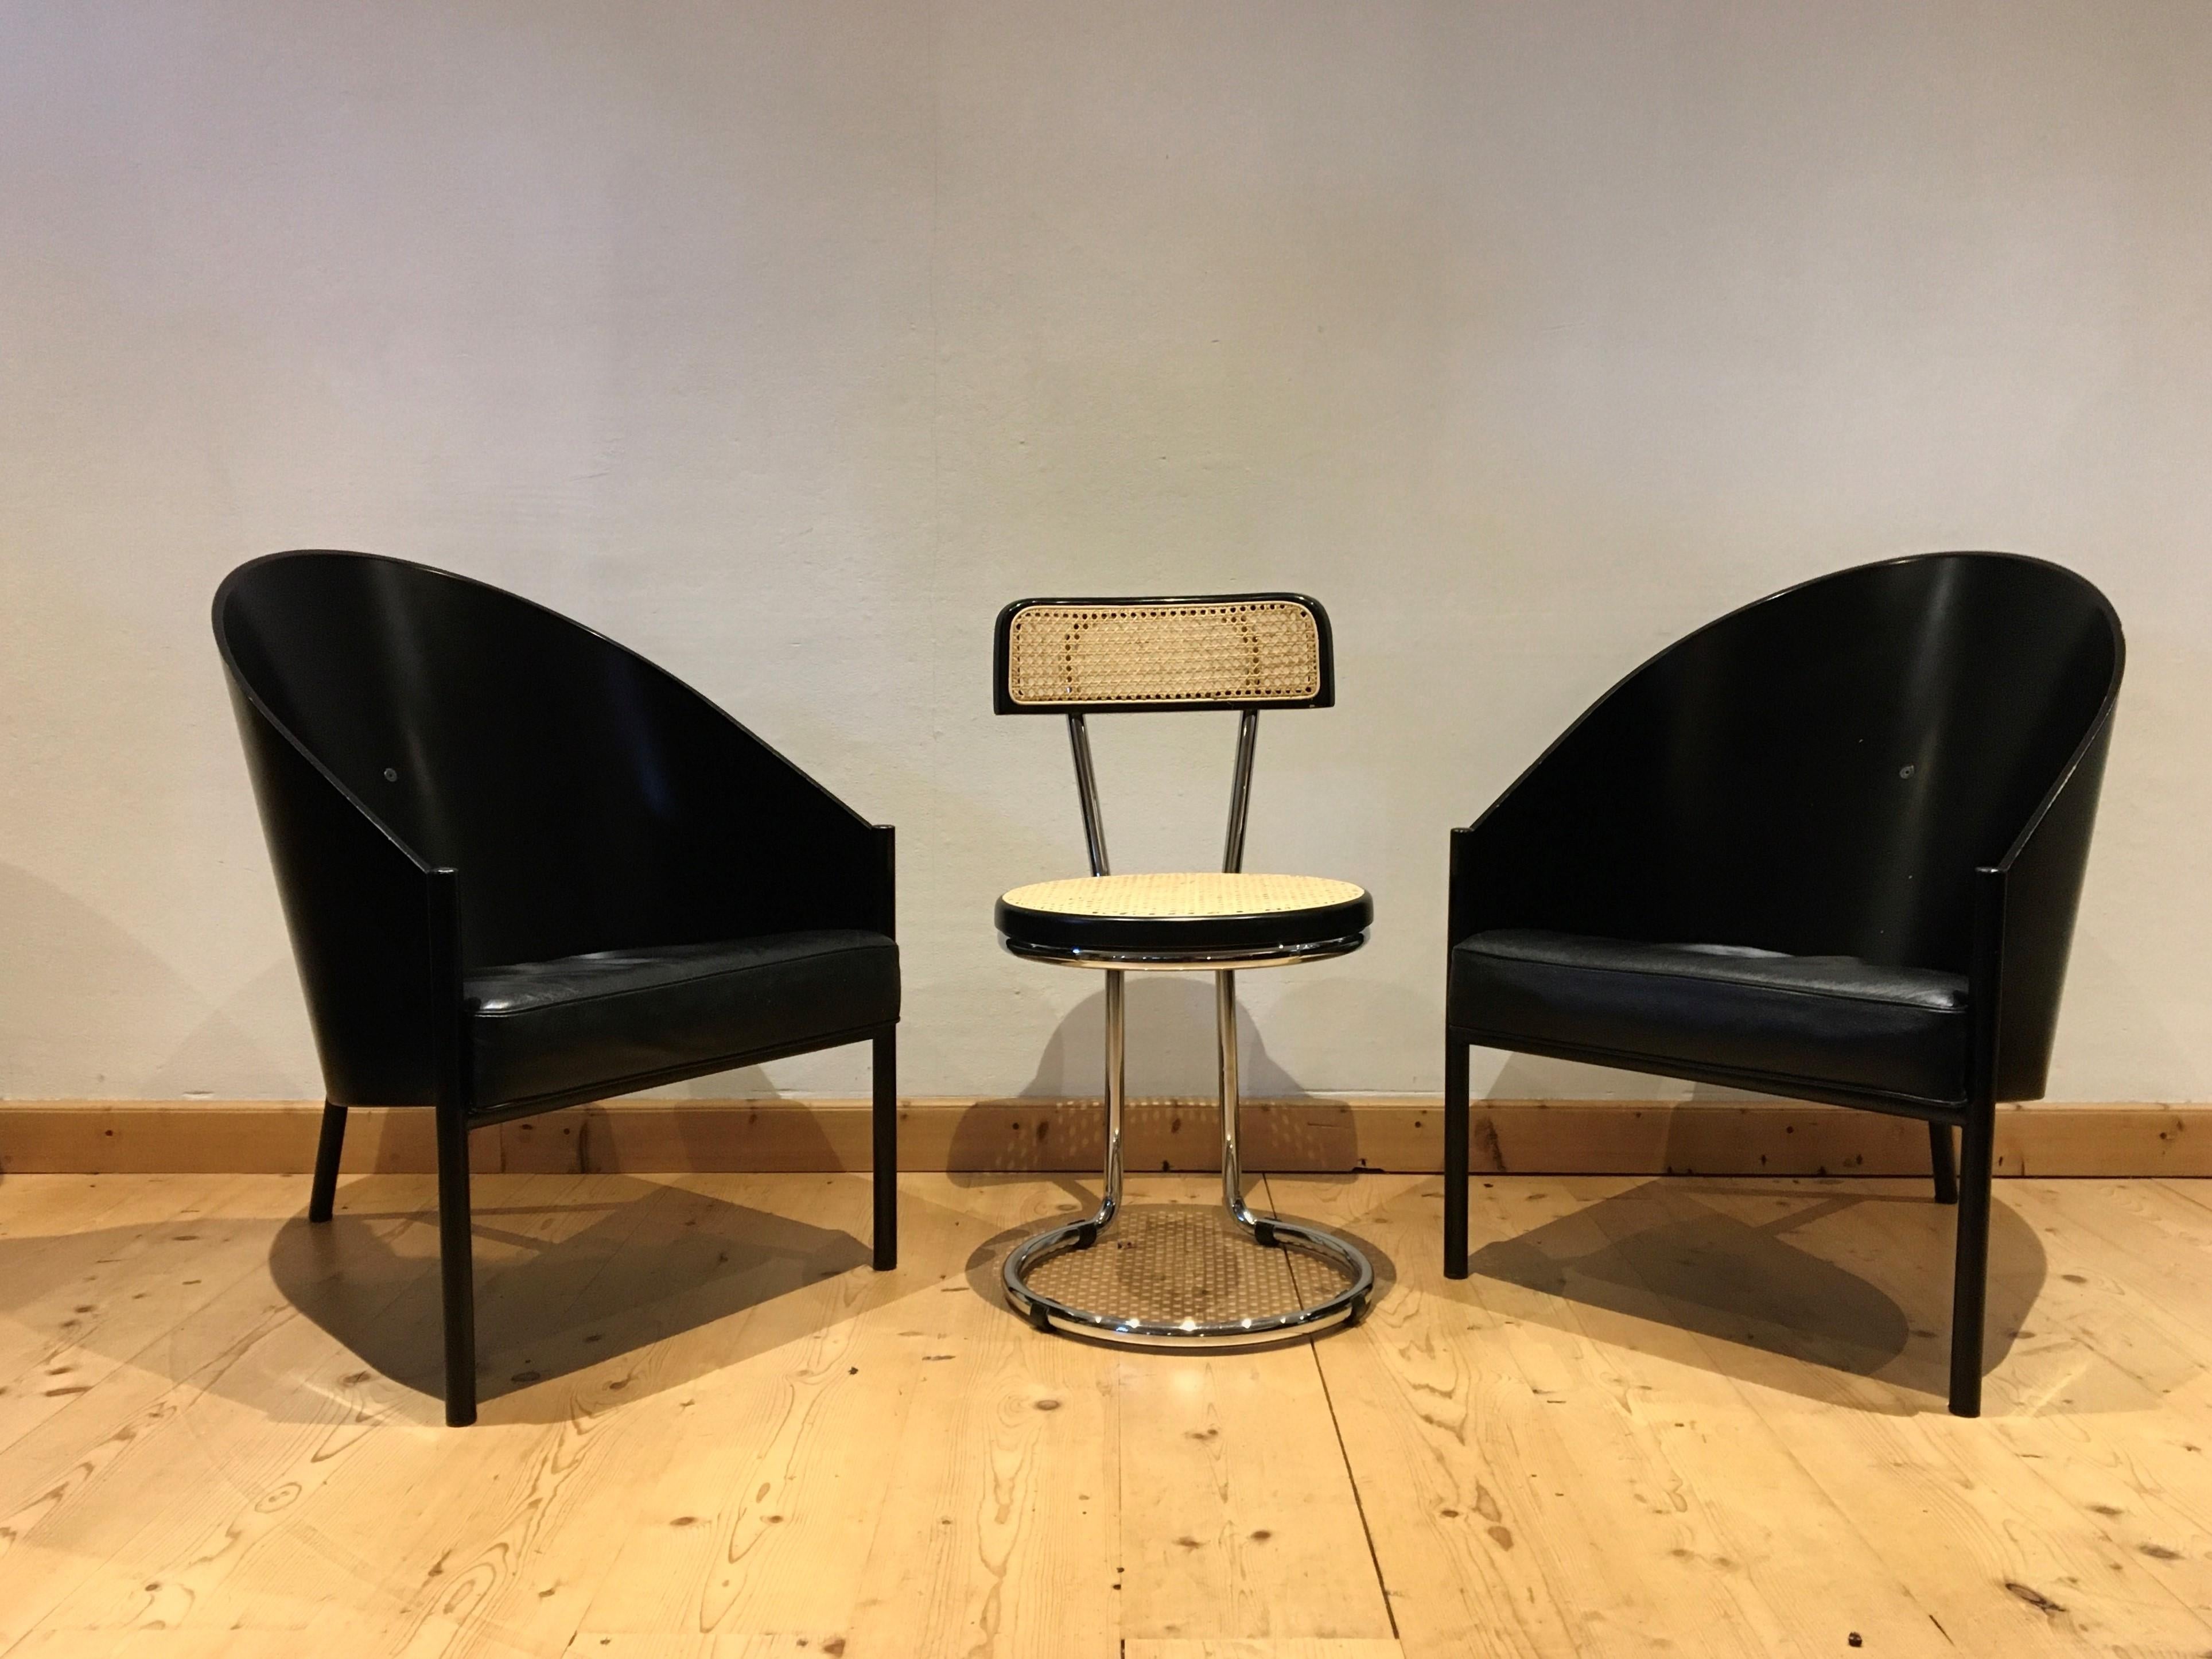 Ensemble de 2 fauteuils ou chaises longues iconiques conçus par Philippe Starck et fabriqués par Driade Aleph Italie. 
Ce modèle appelé Pratfall est plus grand que la chaise Calle du modèle Starck, 
ce qui fait de ces chaises des chaises de salon,